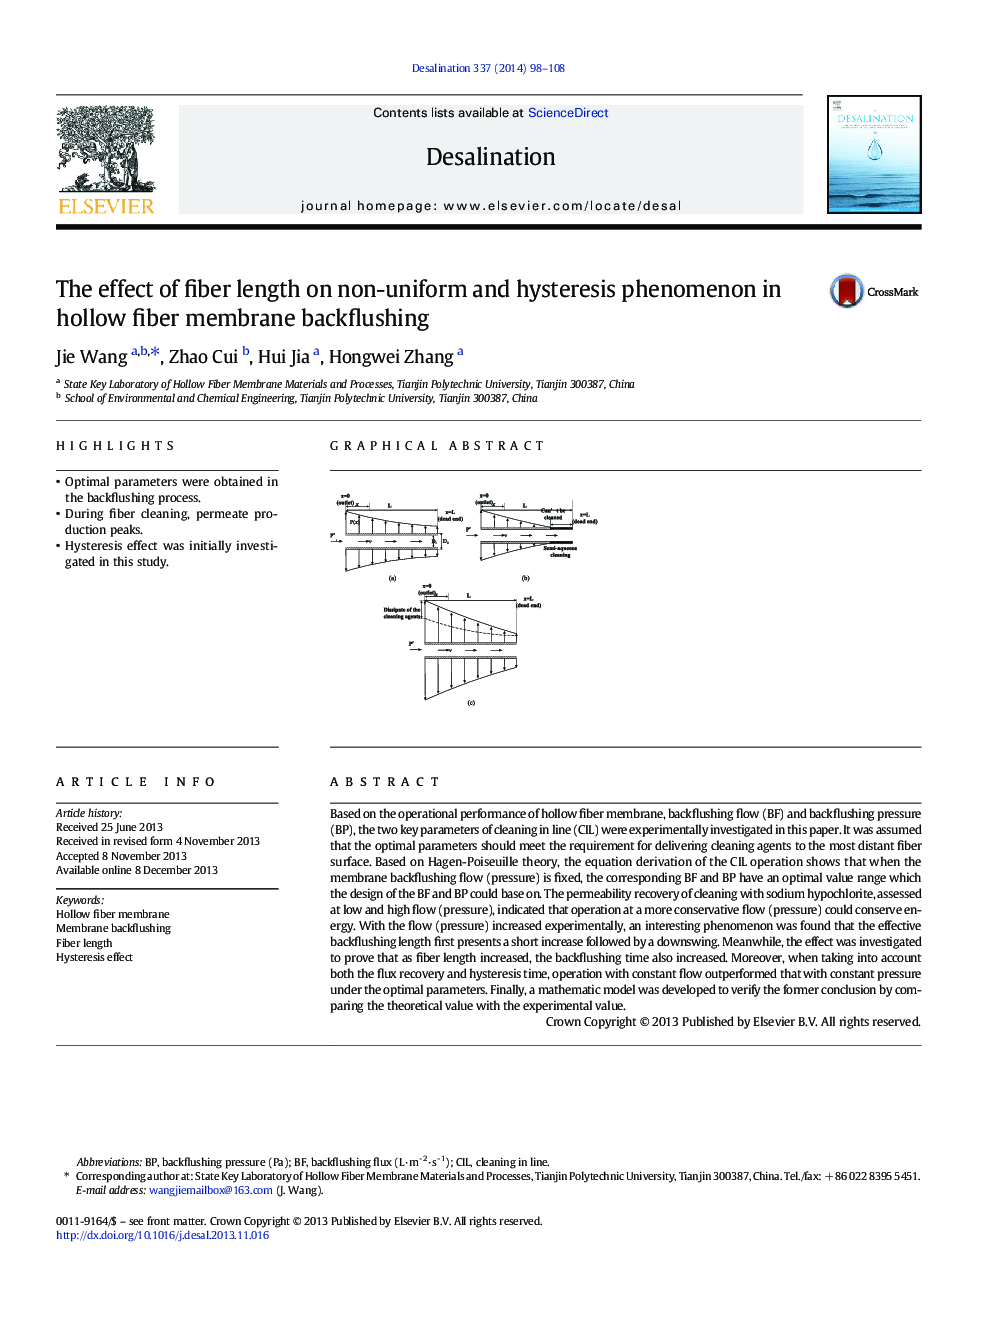 اثر طول فیبر در پدیده غیر یکنواخت و هیسترزیس در فایبرگلاس غشای فیبر توخالی 